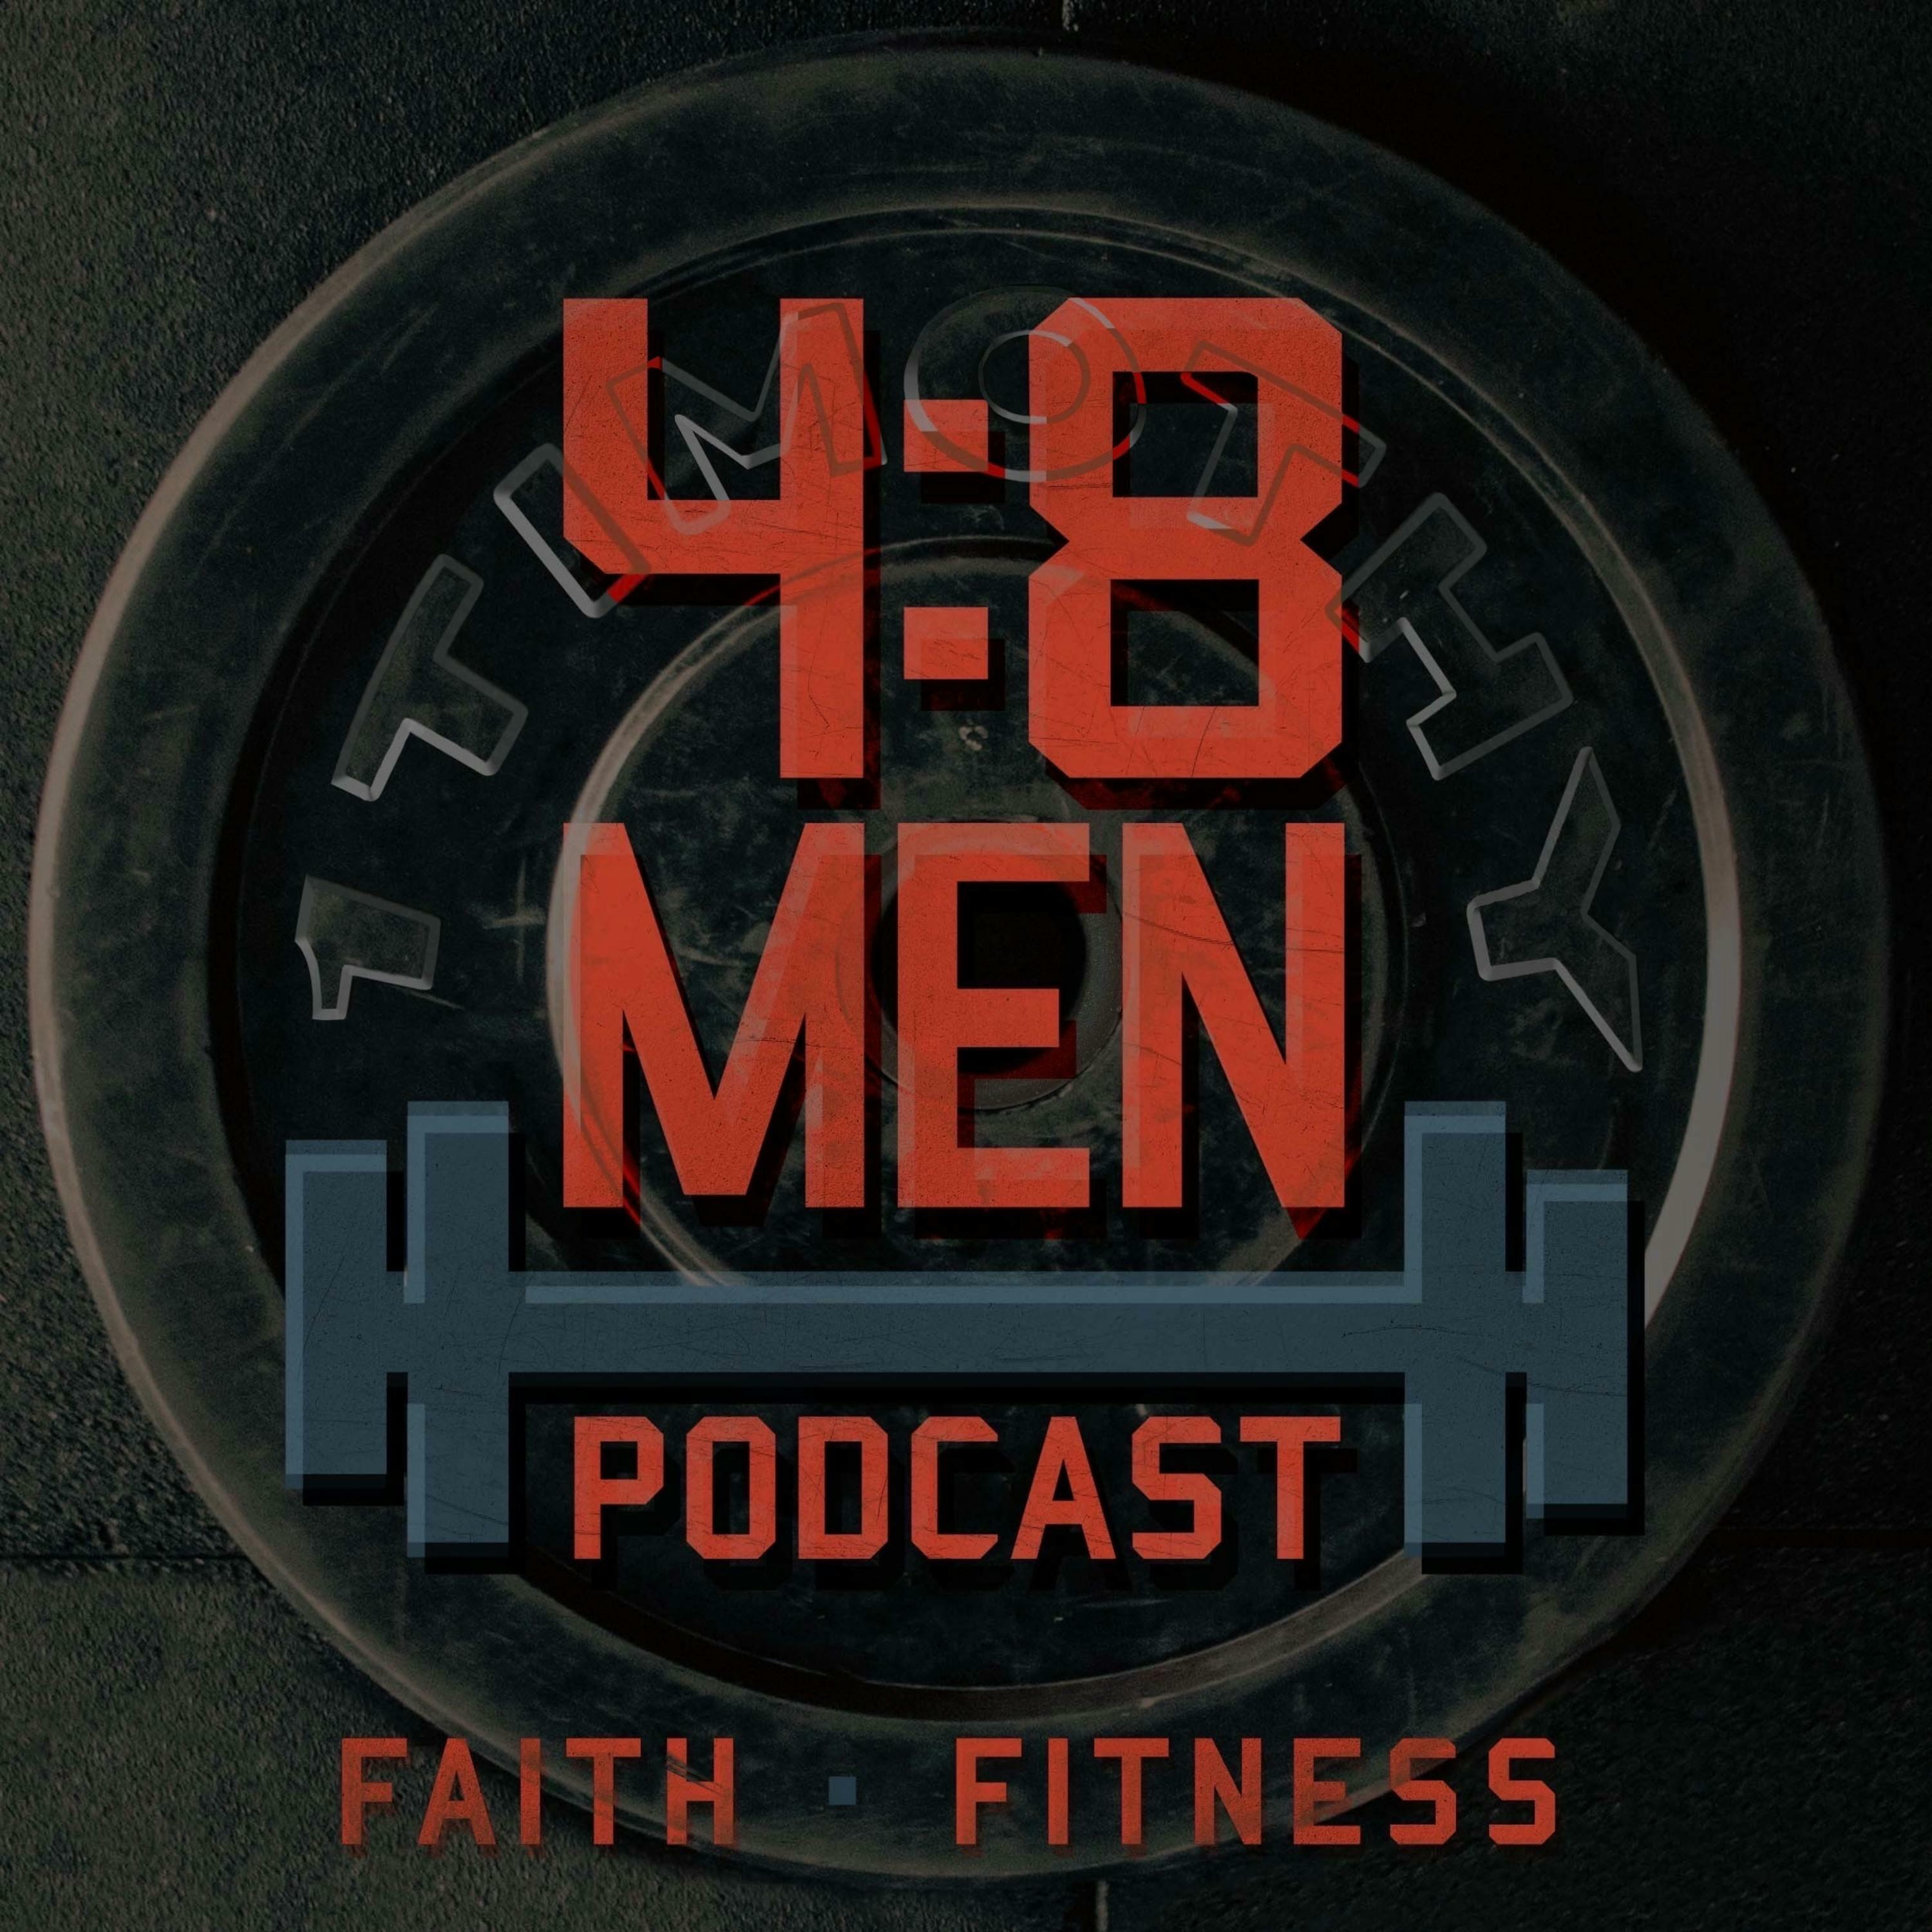 The 4:8 Men Podcast | iHeart